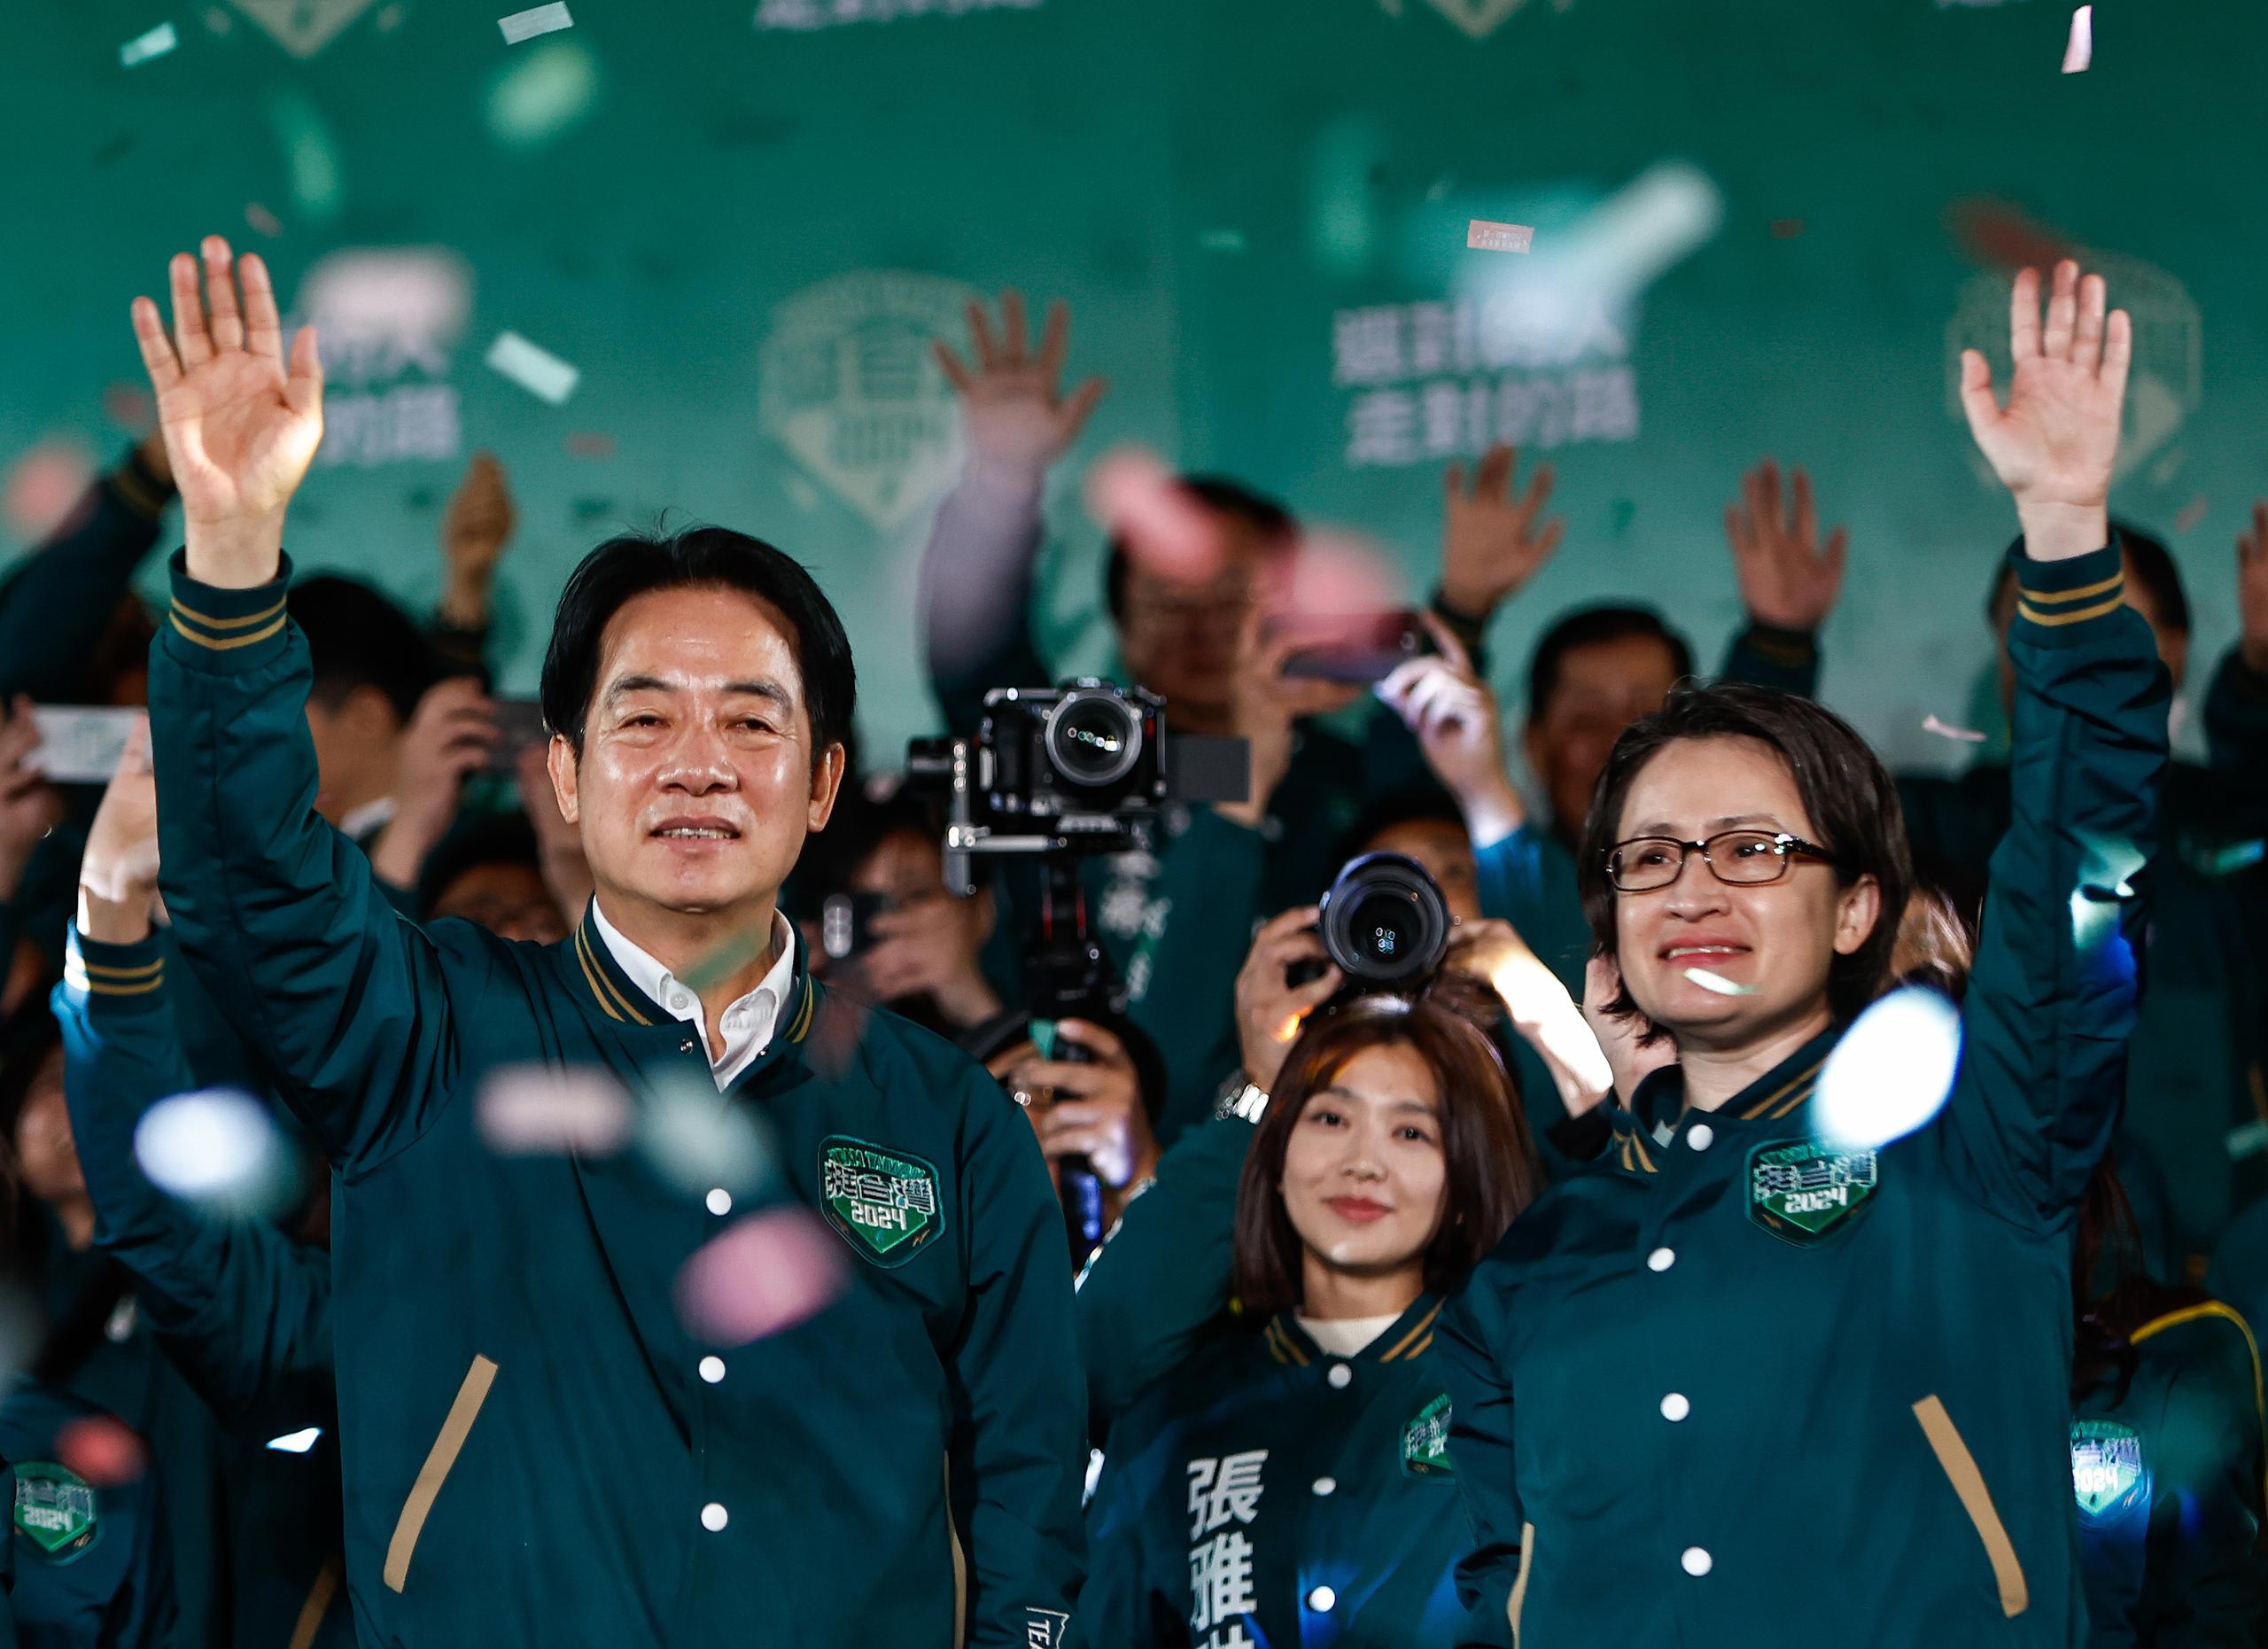 El vicepresidente taiwanés y candidato presidencial del gobernante Partido Democrático Progresista (PDP), William Lai (Lai Ching-te) (izq), y el candidato a vicepresidente, Hsiao Bi-khim (dcha), celebran en medio de una lluvia de confeti durante un mitin después de ganar las elecciones presidenciales en Taipei, Taiwán, el 13 de enero de 2024. EFE/ Daniel Ceng
